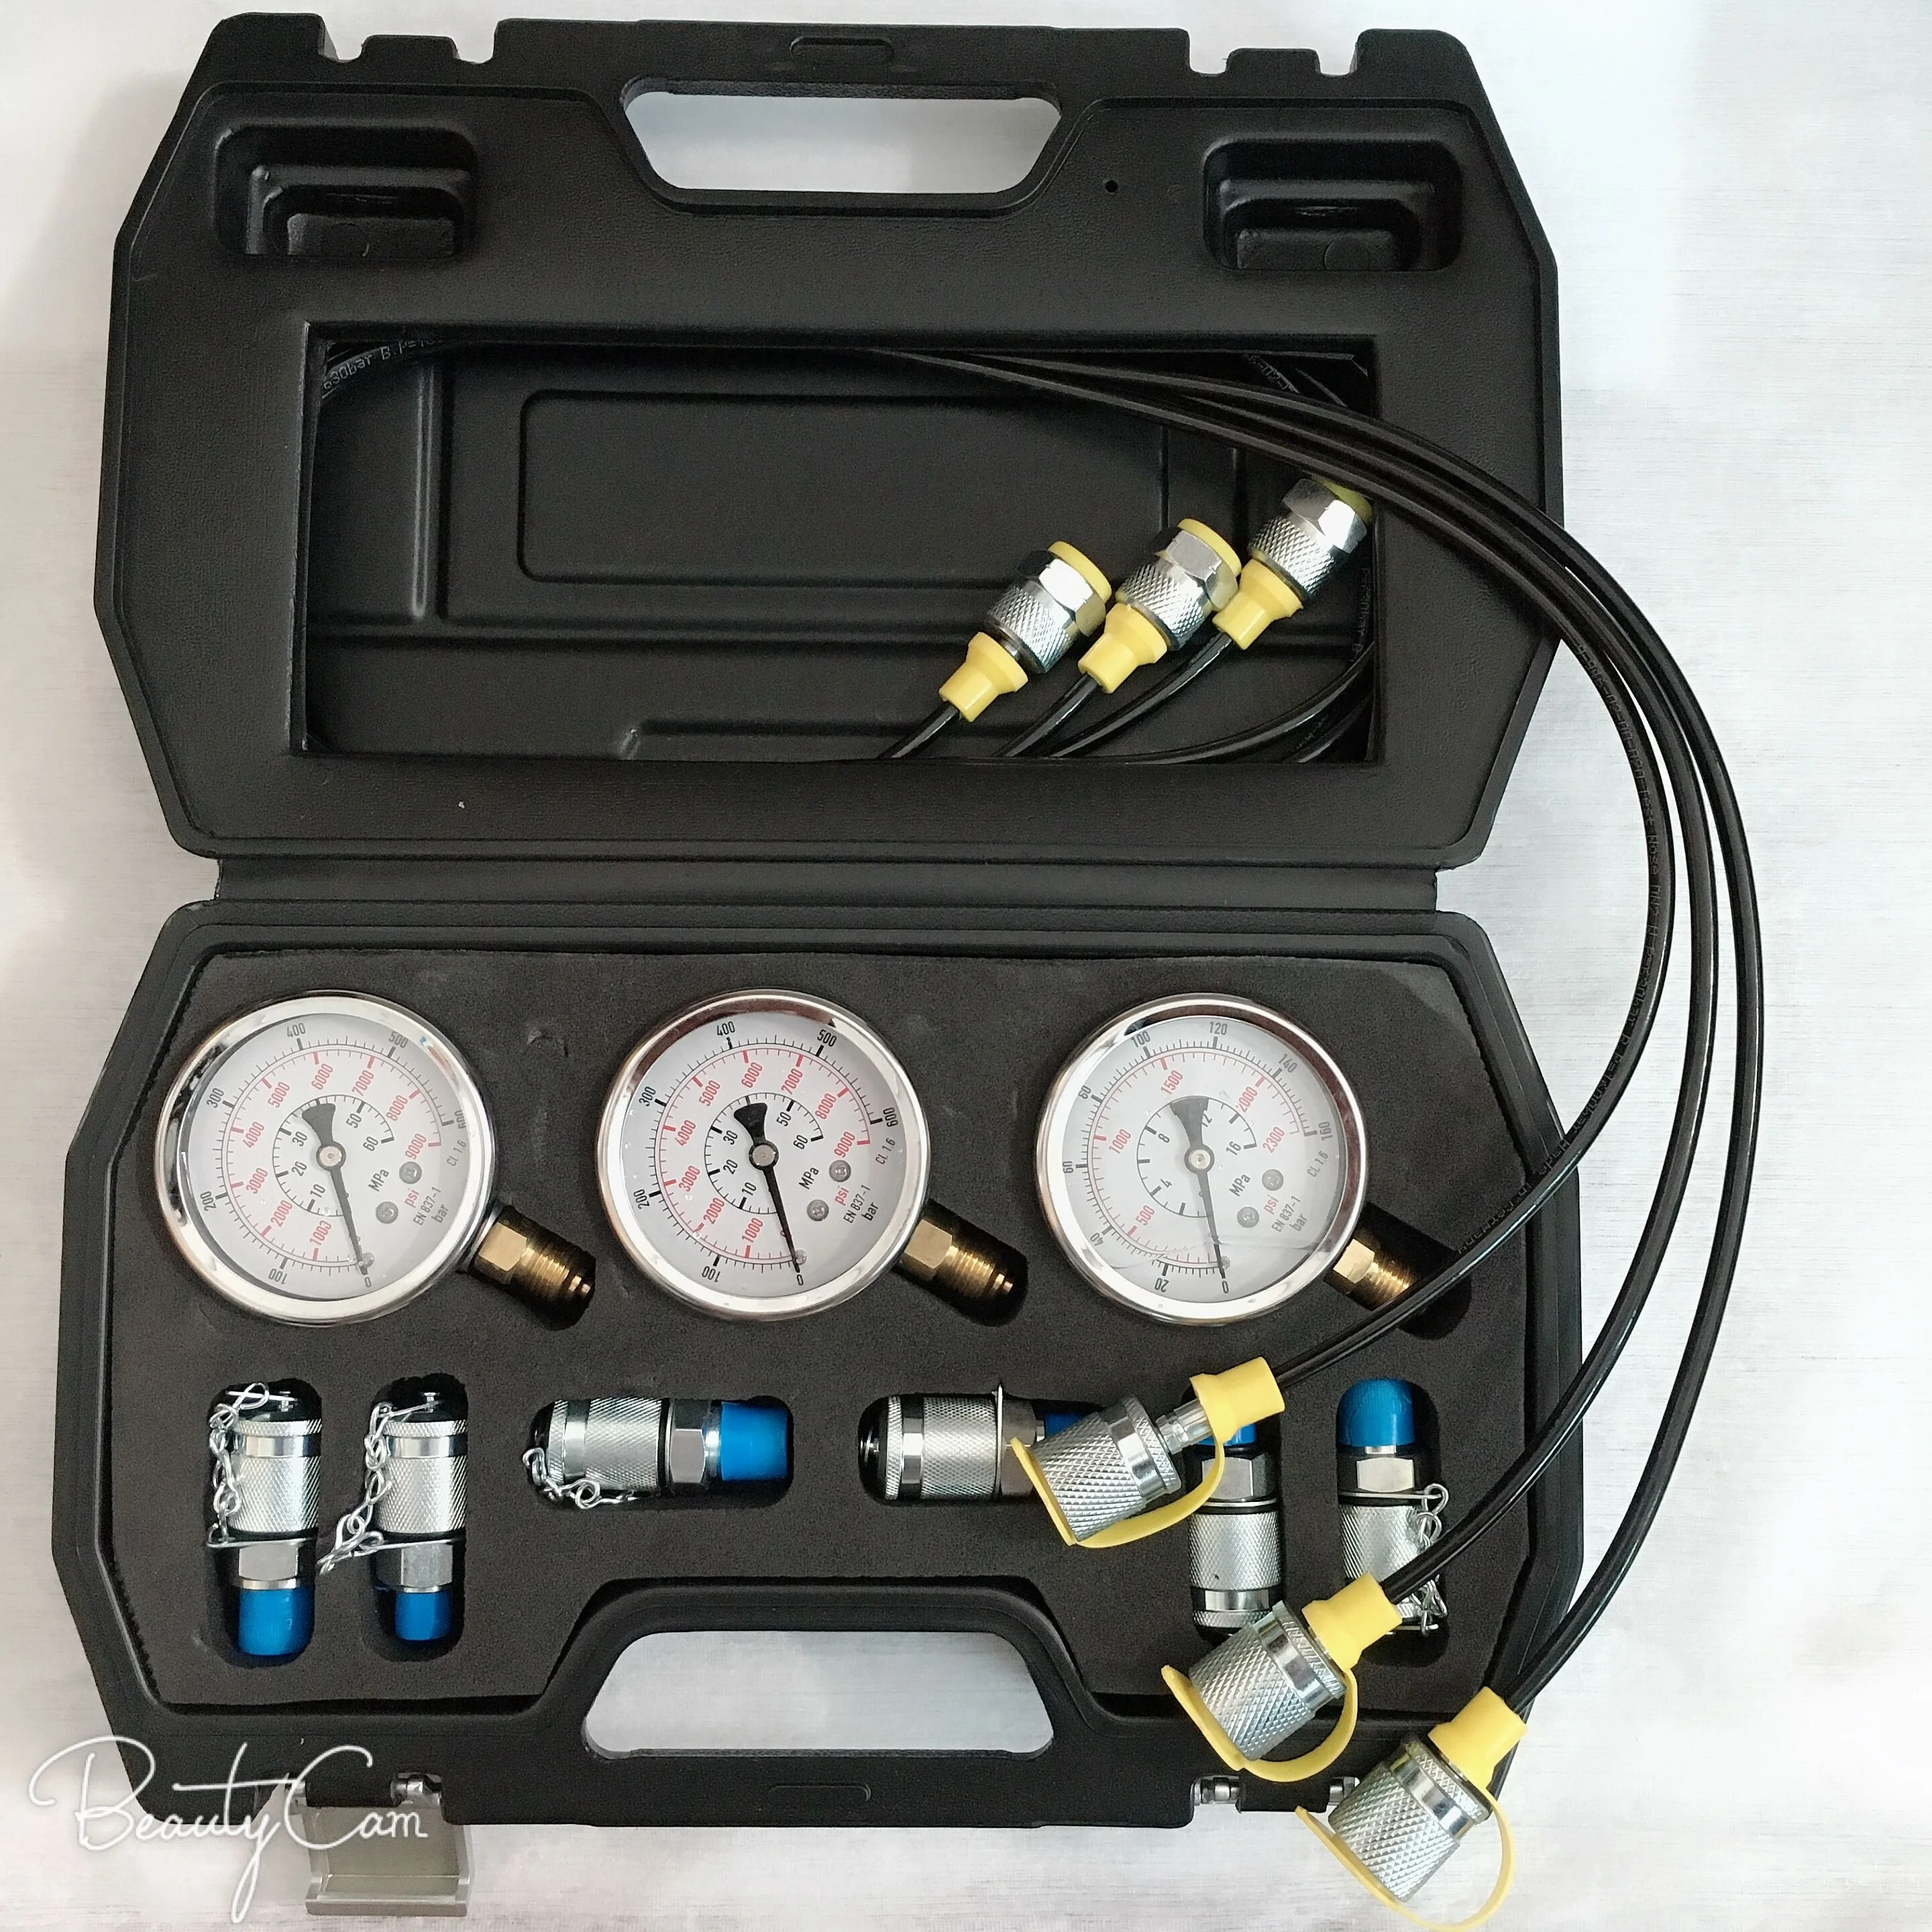 Kit de calibre presión hidráulica probador de presión hidráulica excavadora piezas Kit de prueba